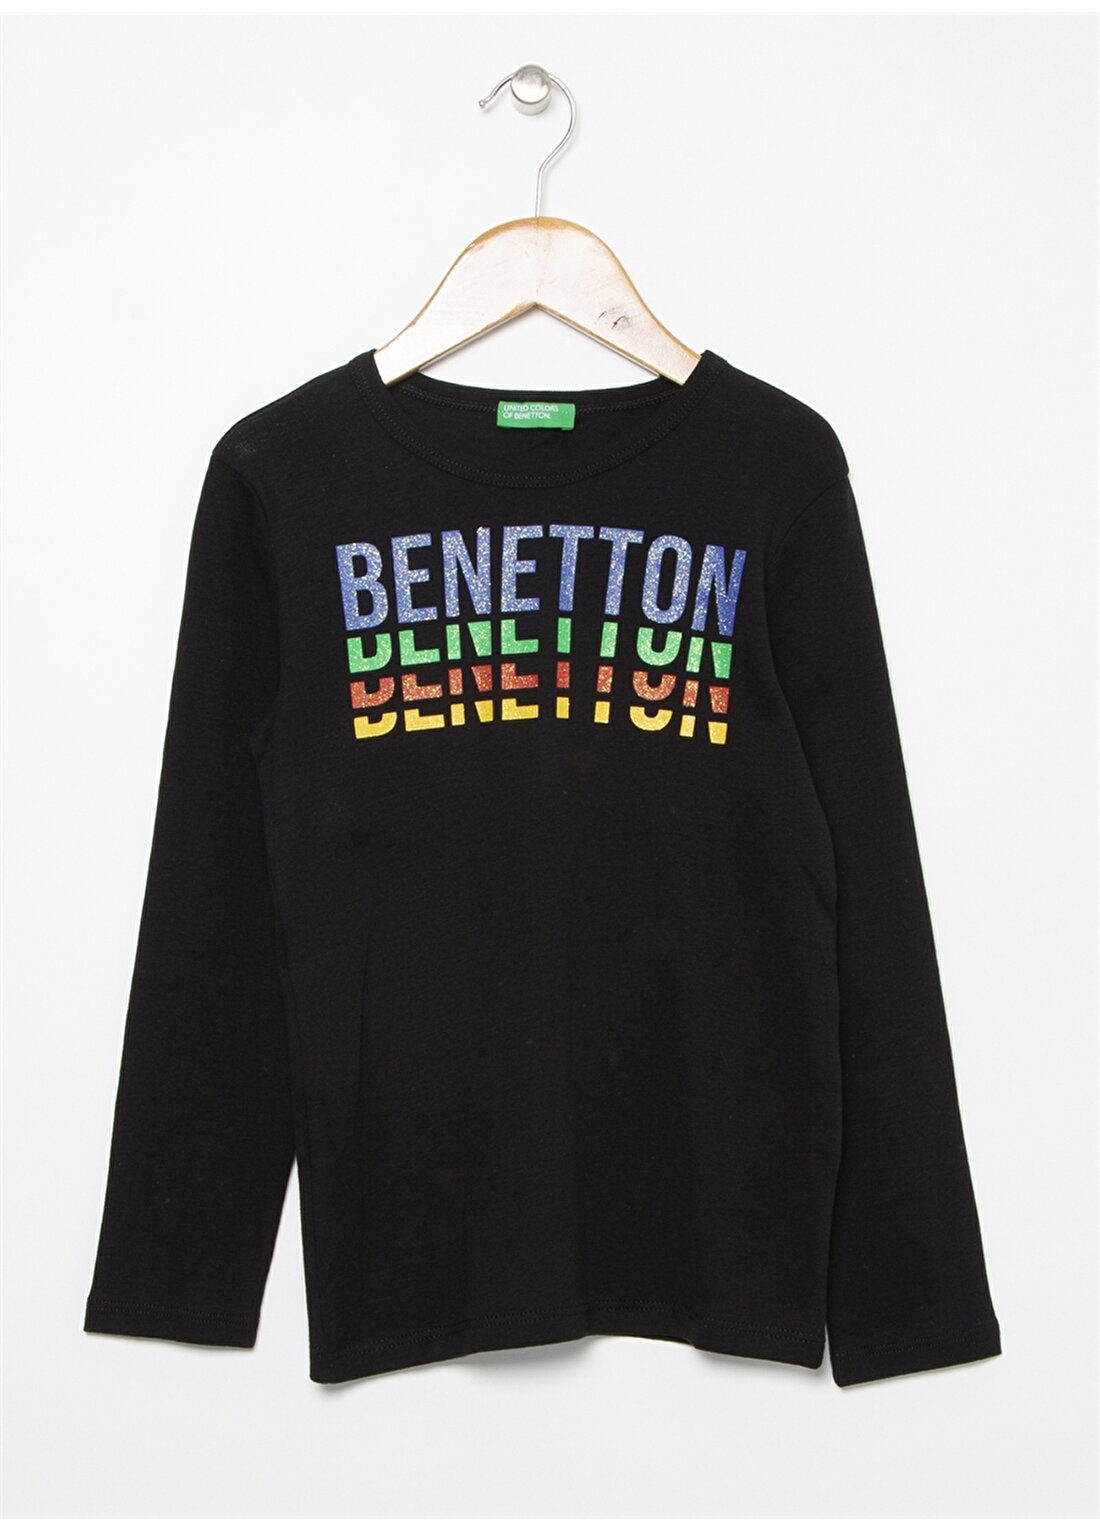 Benetton Yazılı Siyah Kız Çocuk T-Shirt